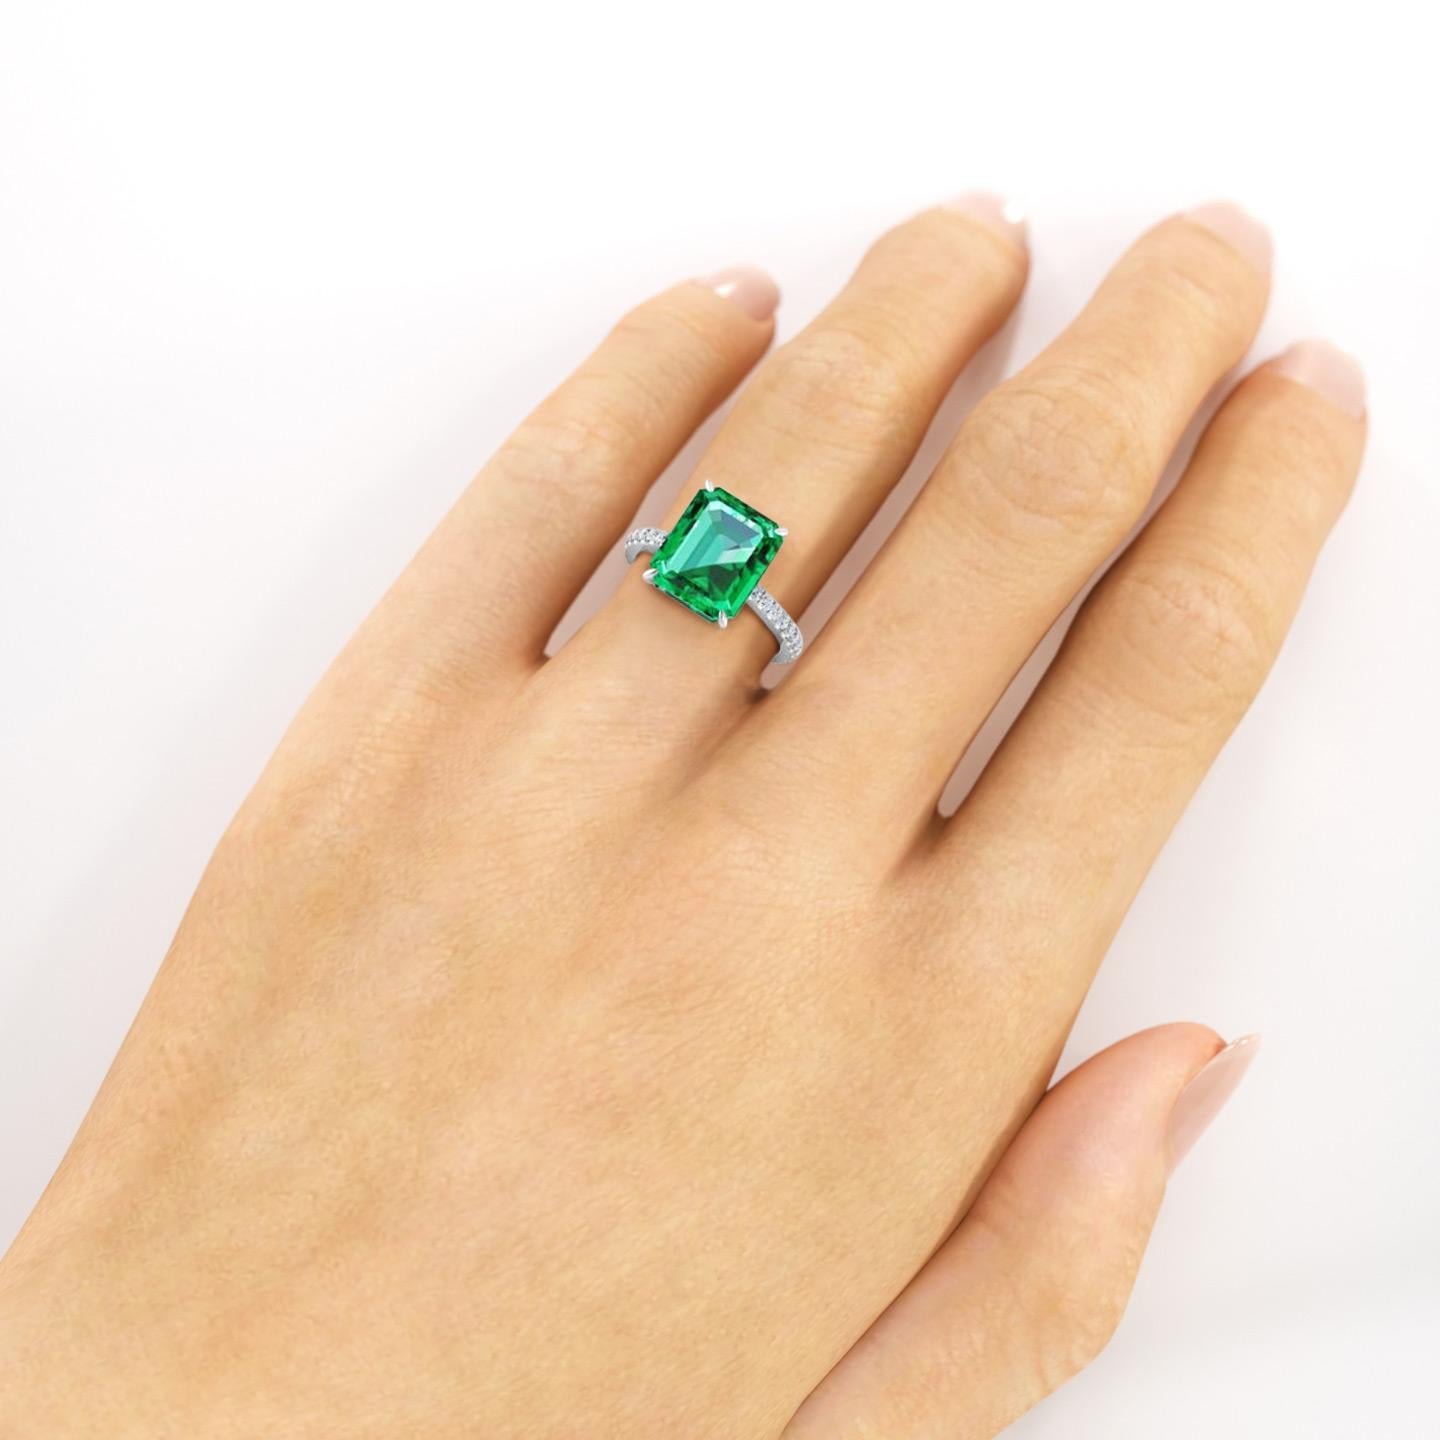 Women's FERRUCCI GIA Certified 4.53 Carat Emerald Cut Emerald Diamond Platinum Ring